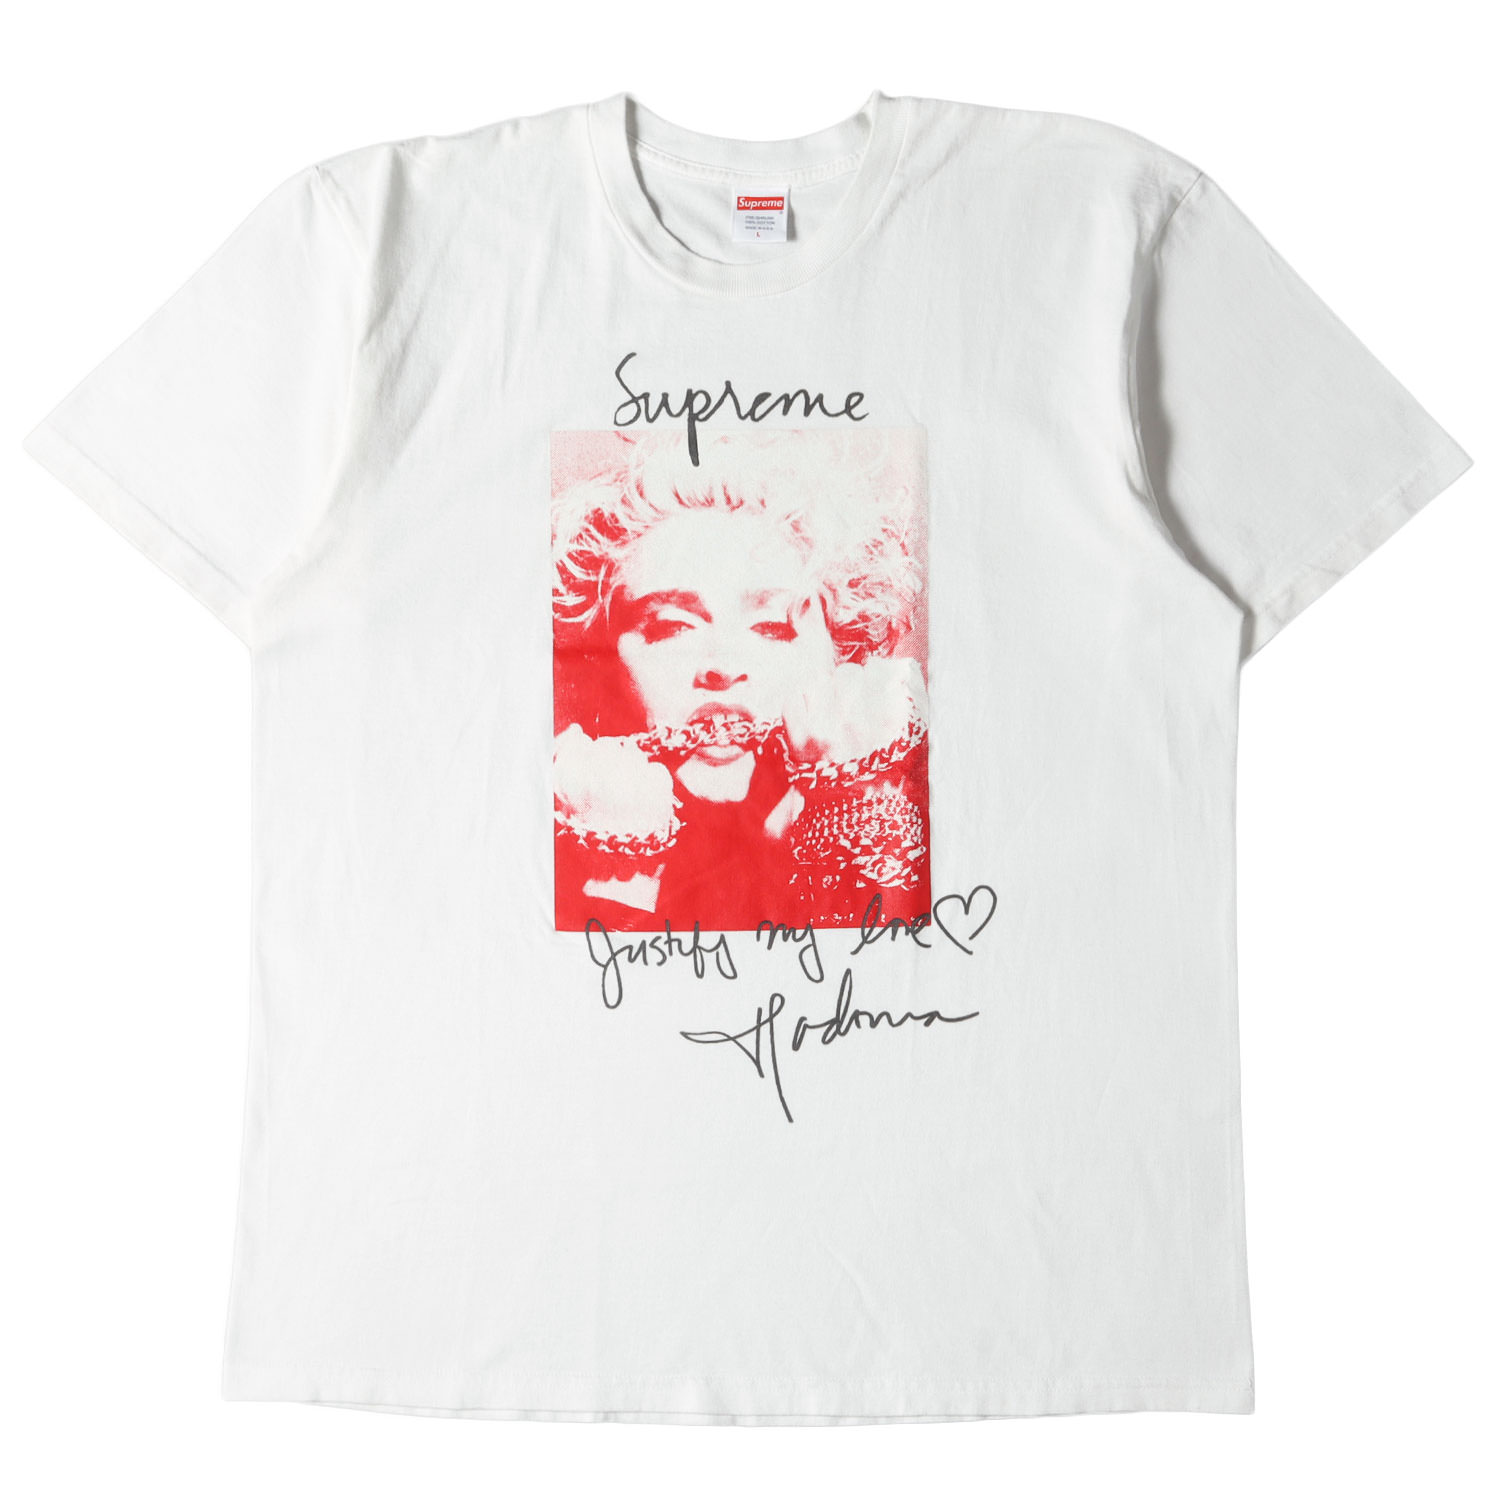 Supreme シュプリーム Tシャツ サイズ:L マドンナ フォト クルーネック Tシャツ Madonna Tee 18AW ホワイト 白 トップス カットソー 半袖 【メンズ】【中古】【K3779】